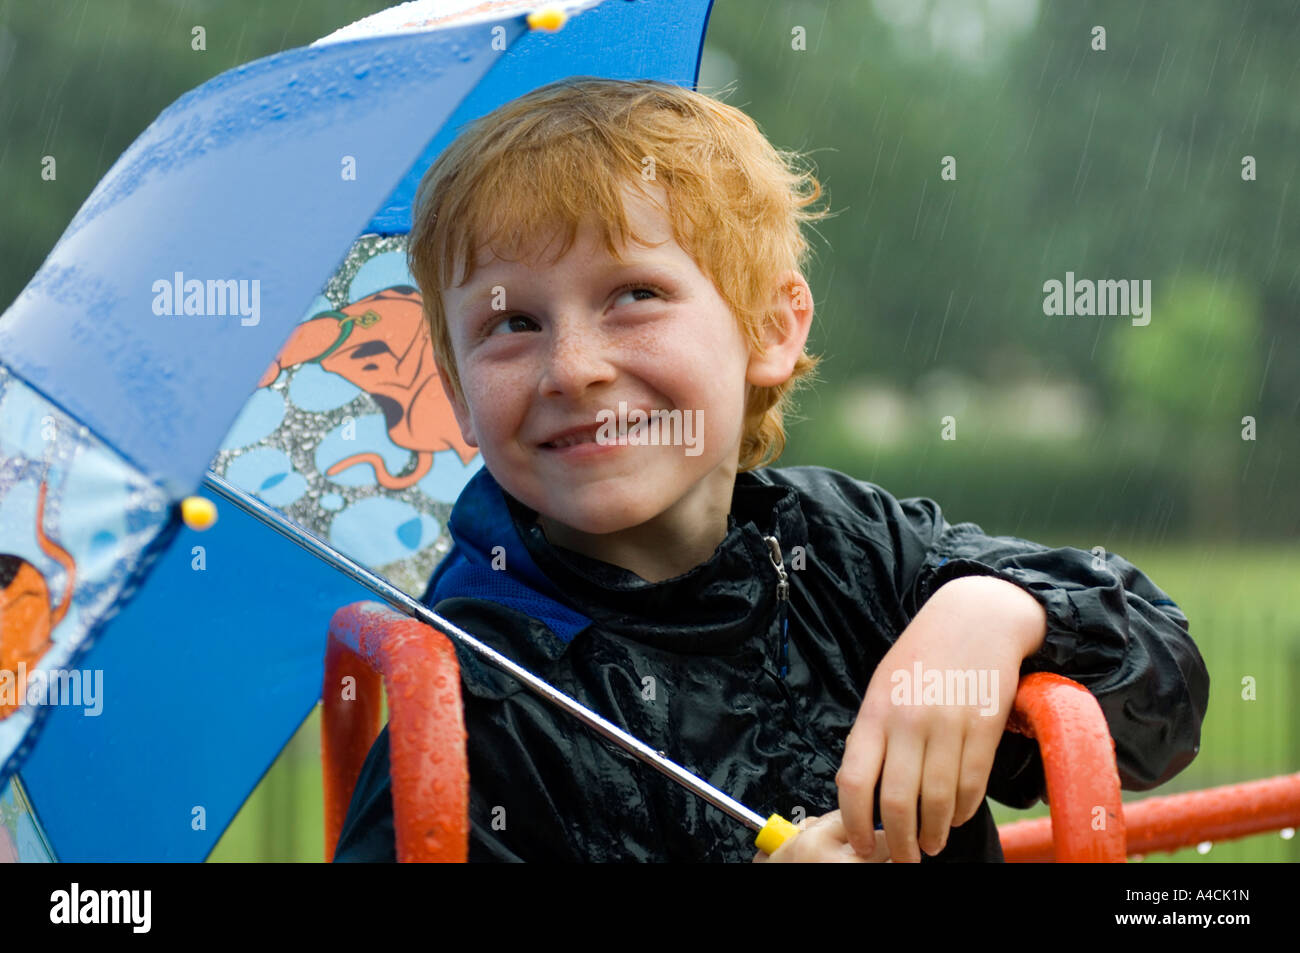 Junge blickte zu dem Regen immer nass versuchen, bleiben trocken unter einem Regenschirm Stockfoto